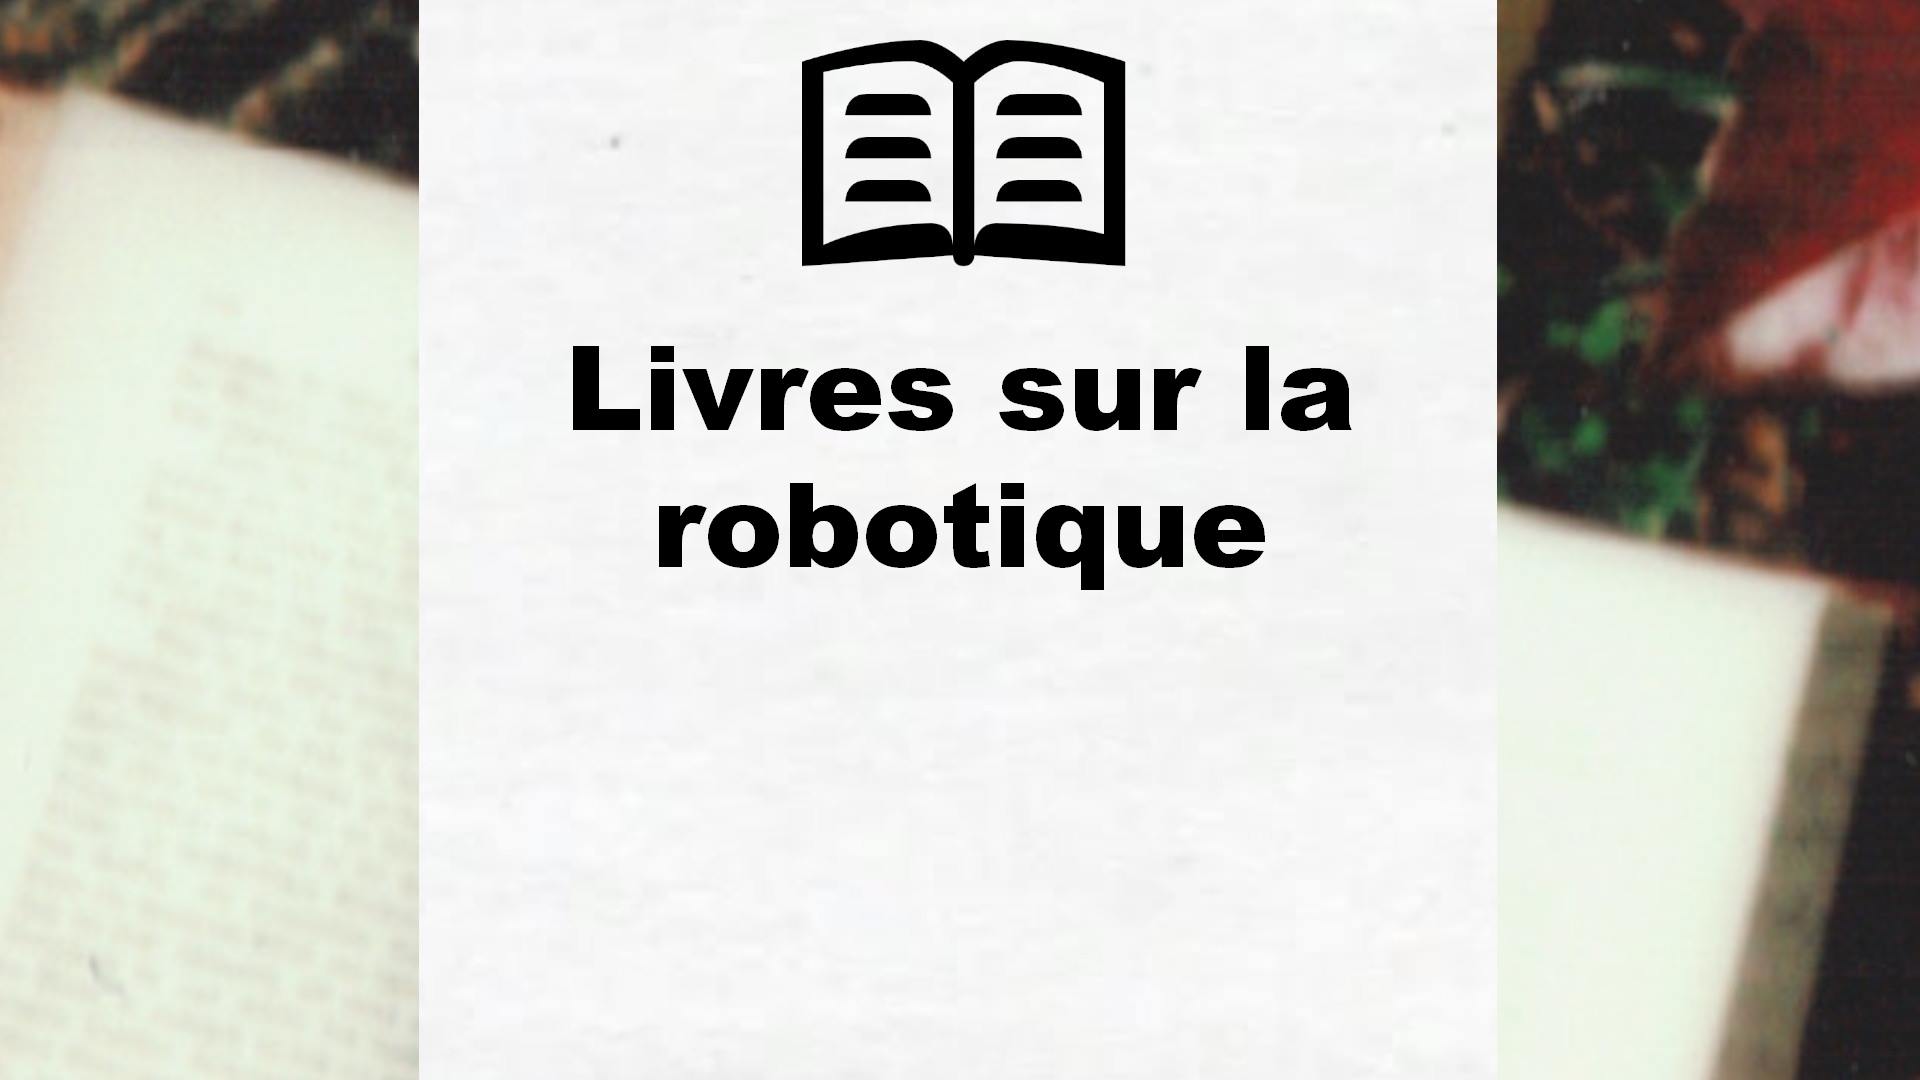 Livres sur la robotique